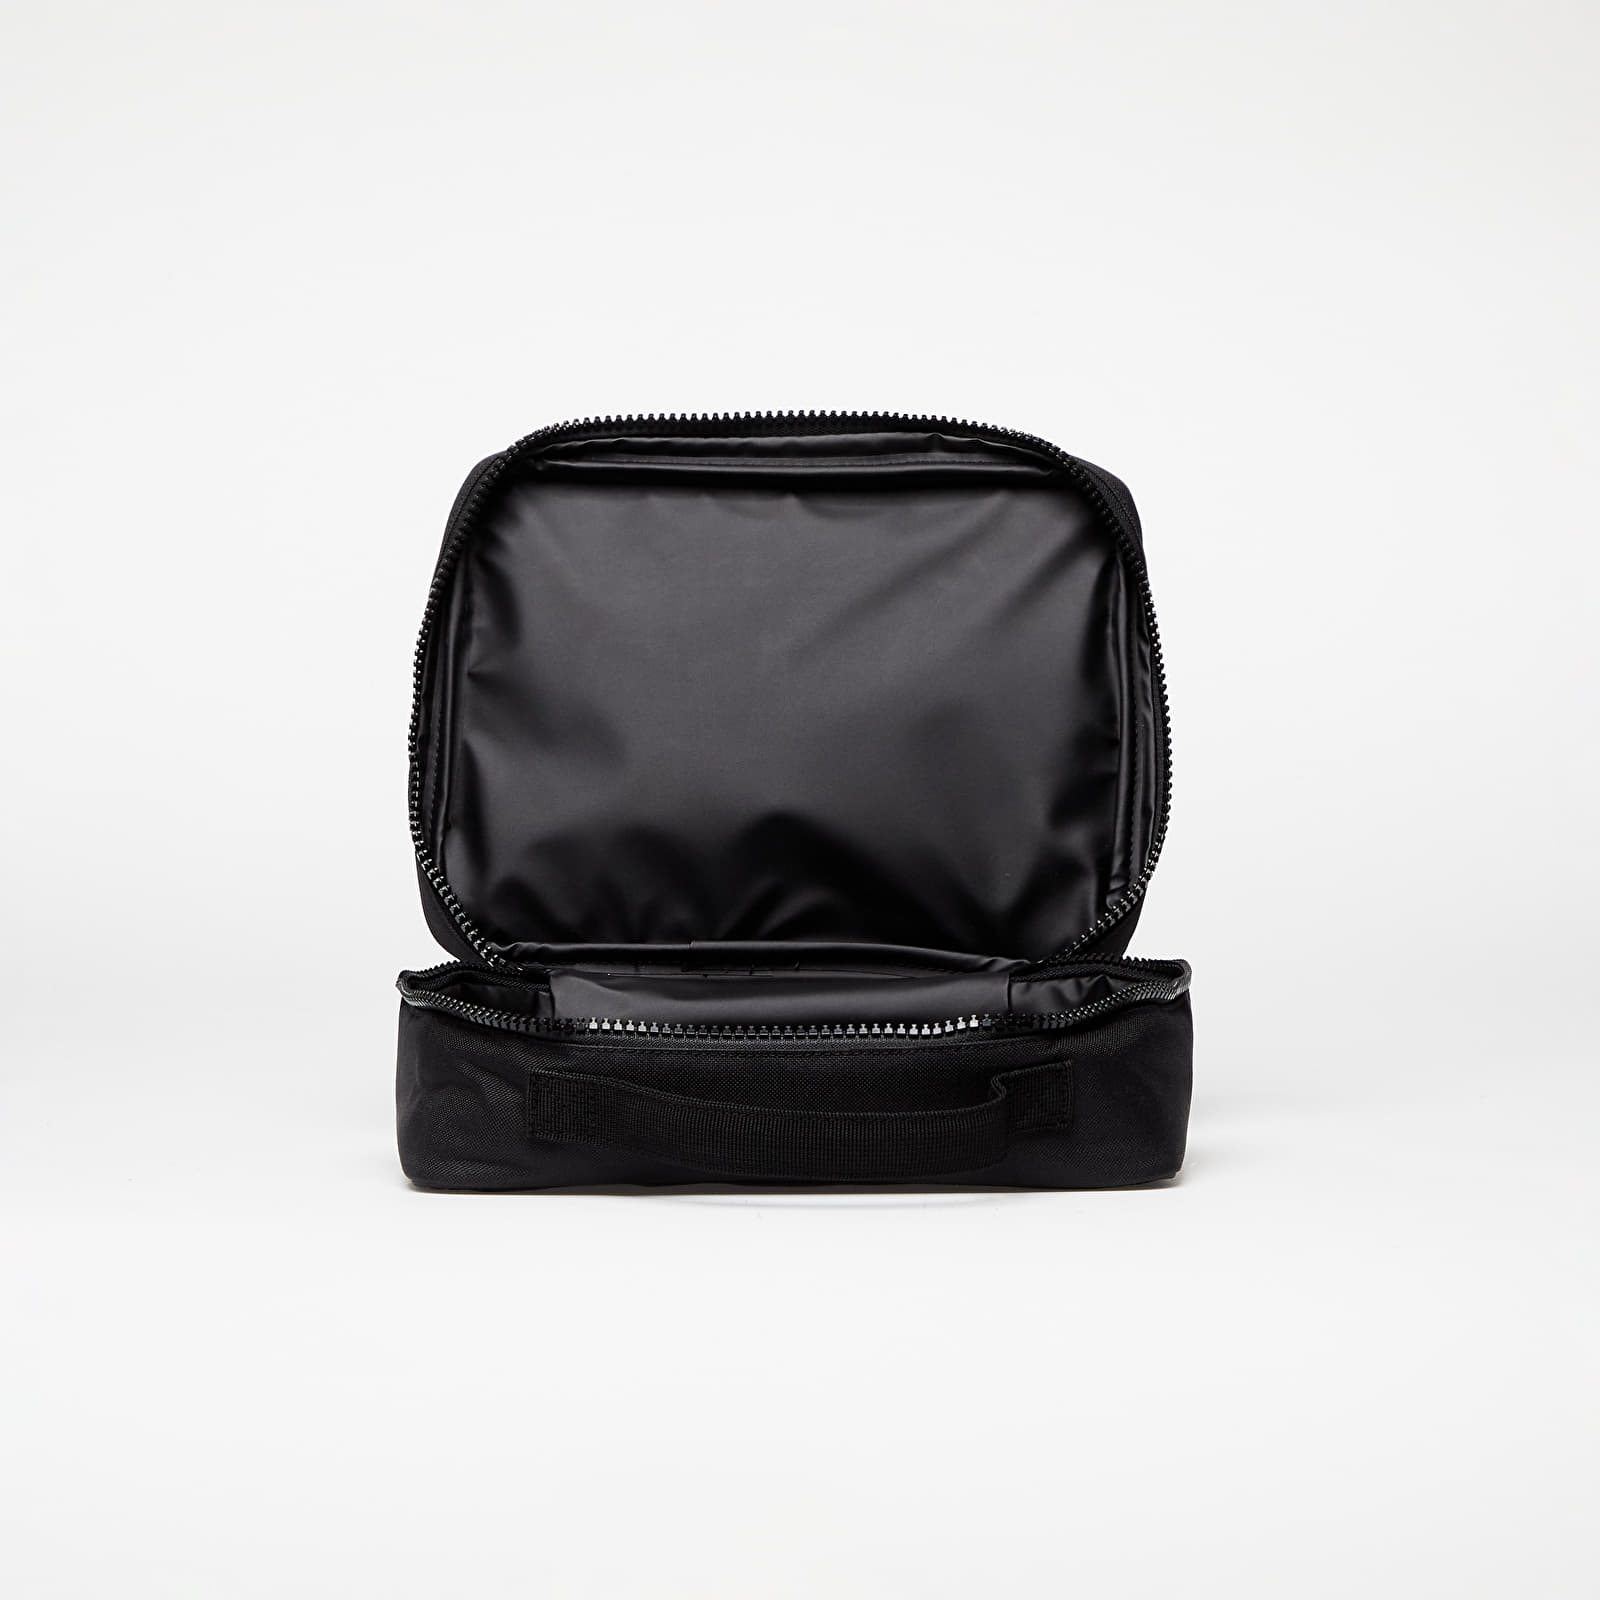 Herschel Supply Co | Pop Quiz Lunch Box | Insulated | Black